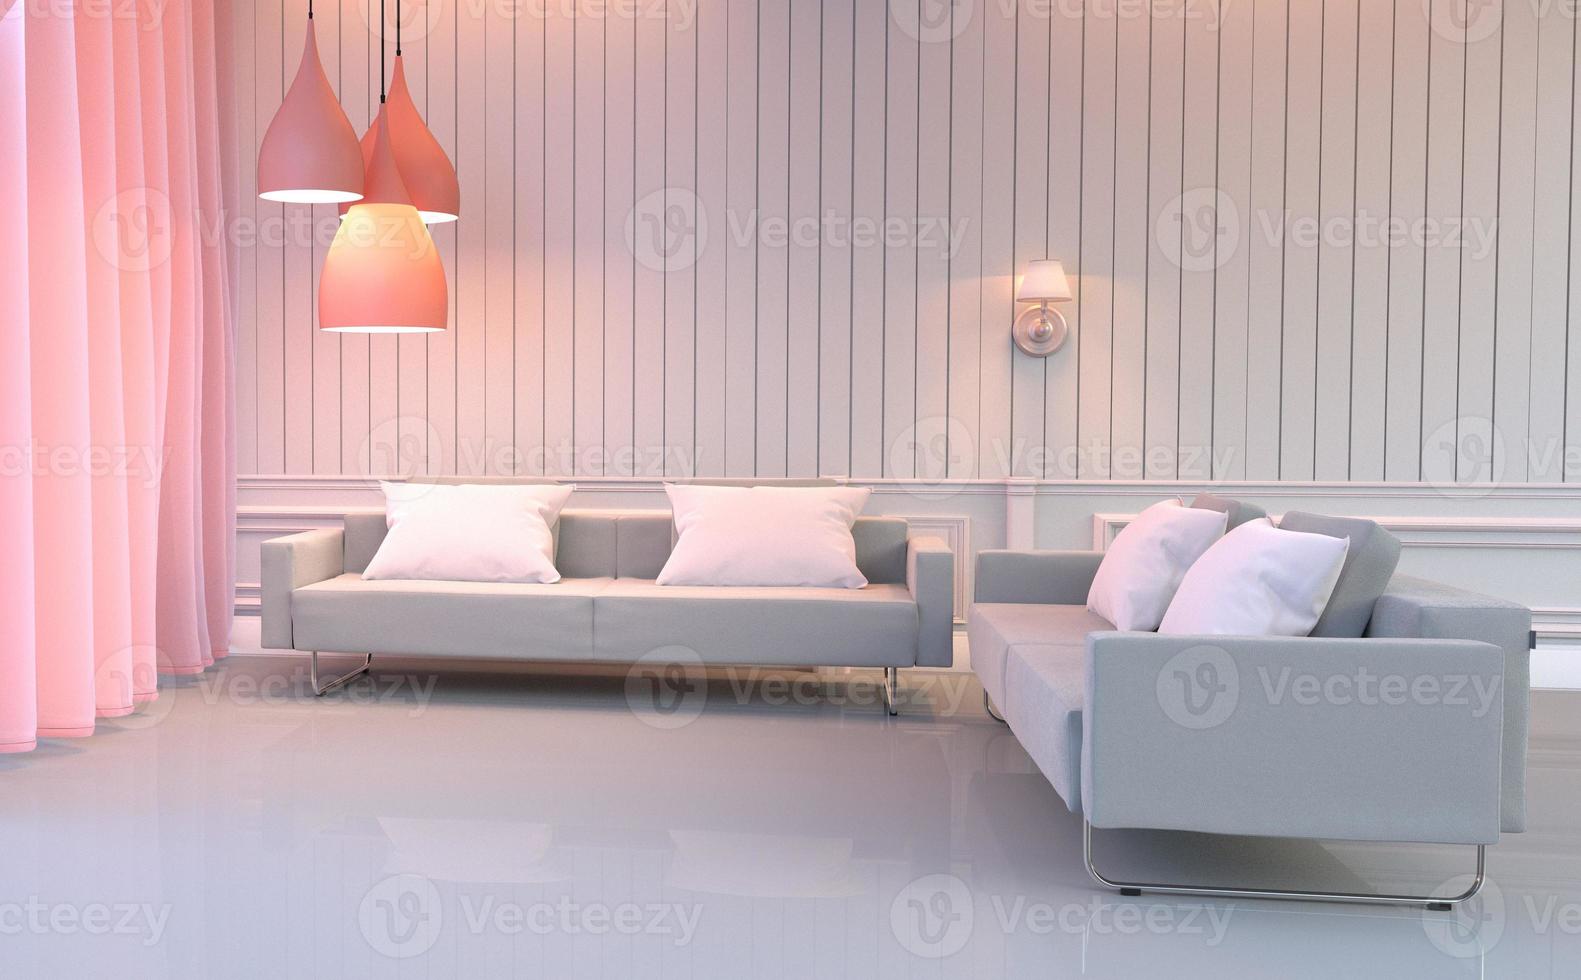 interni del soggiorno - camera rosa Europa in stile elegante con divano doppio e cuscini. rendering 3d foto